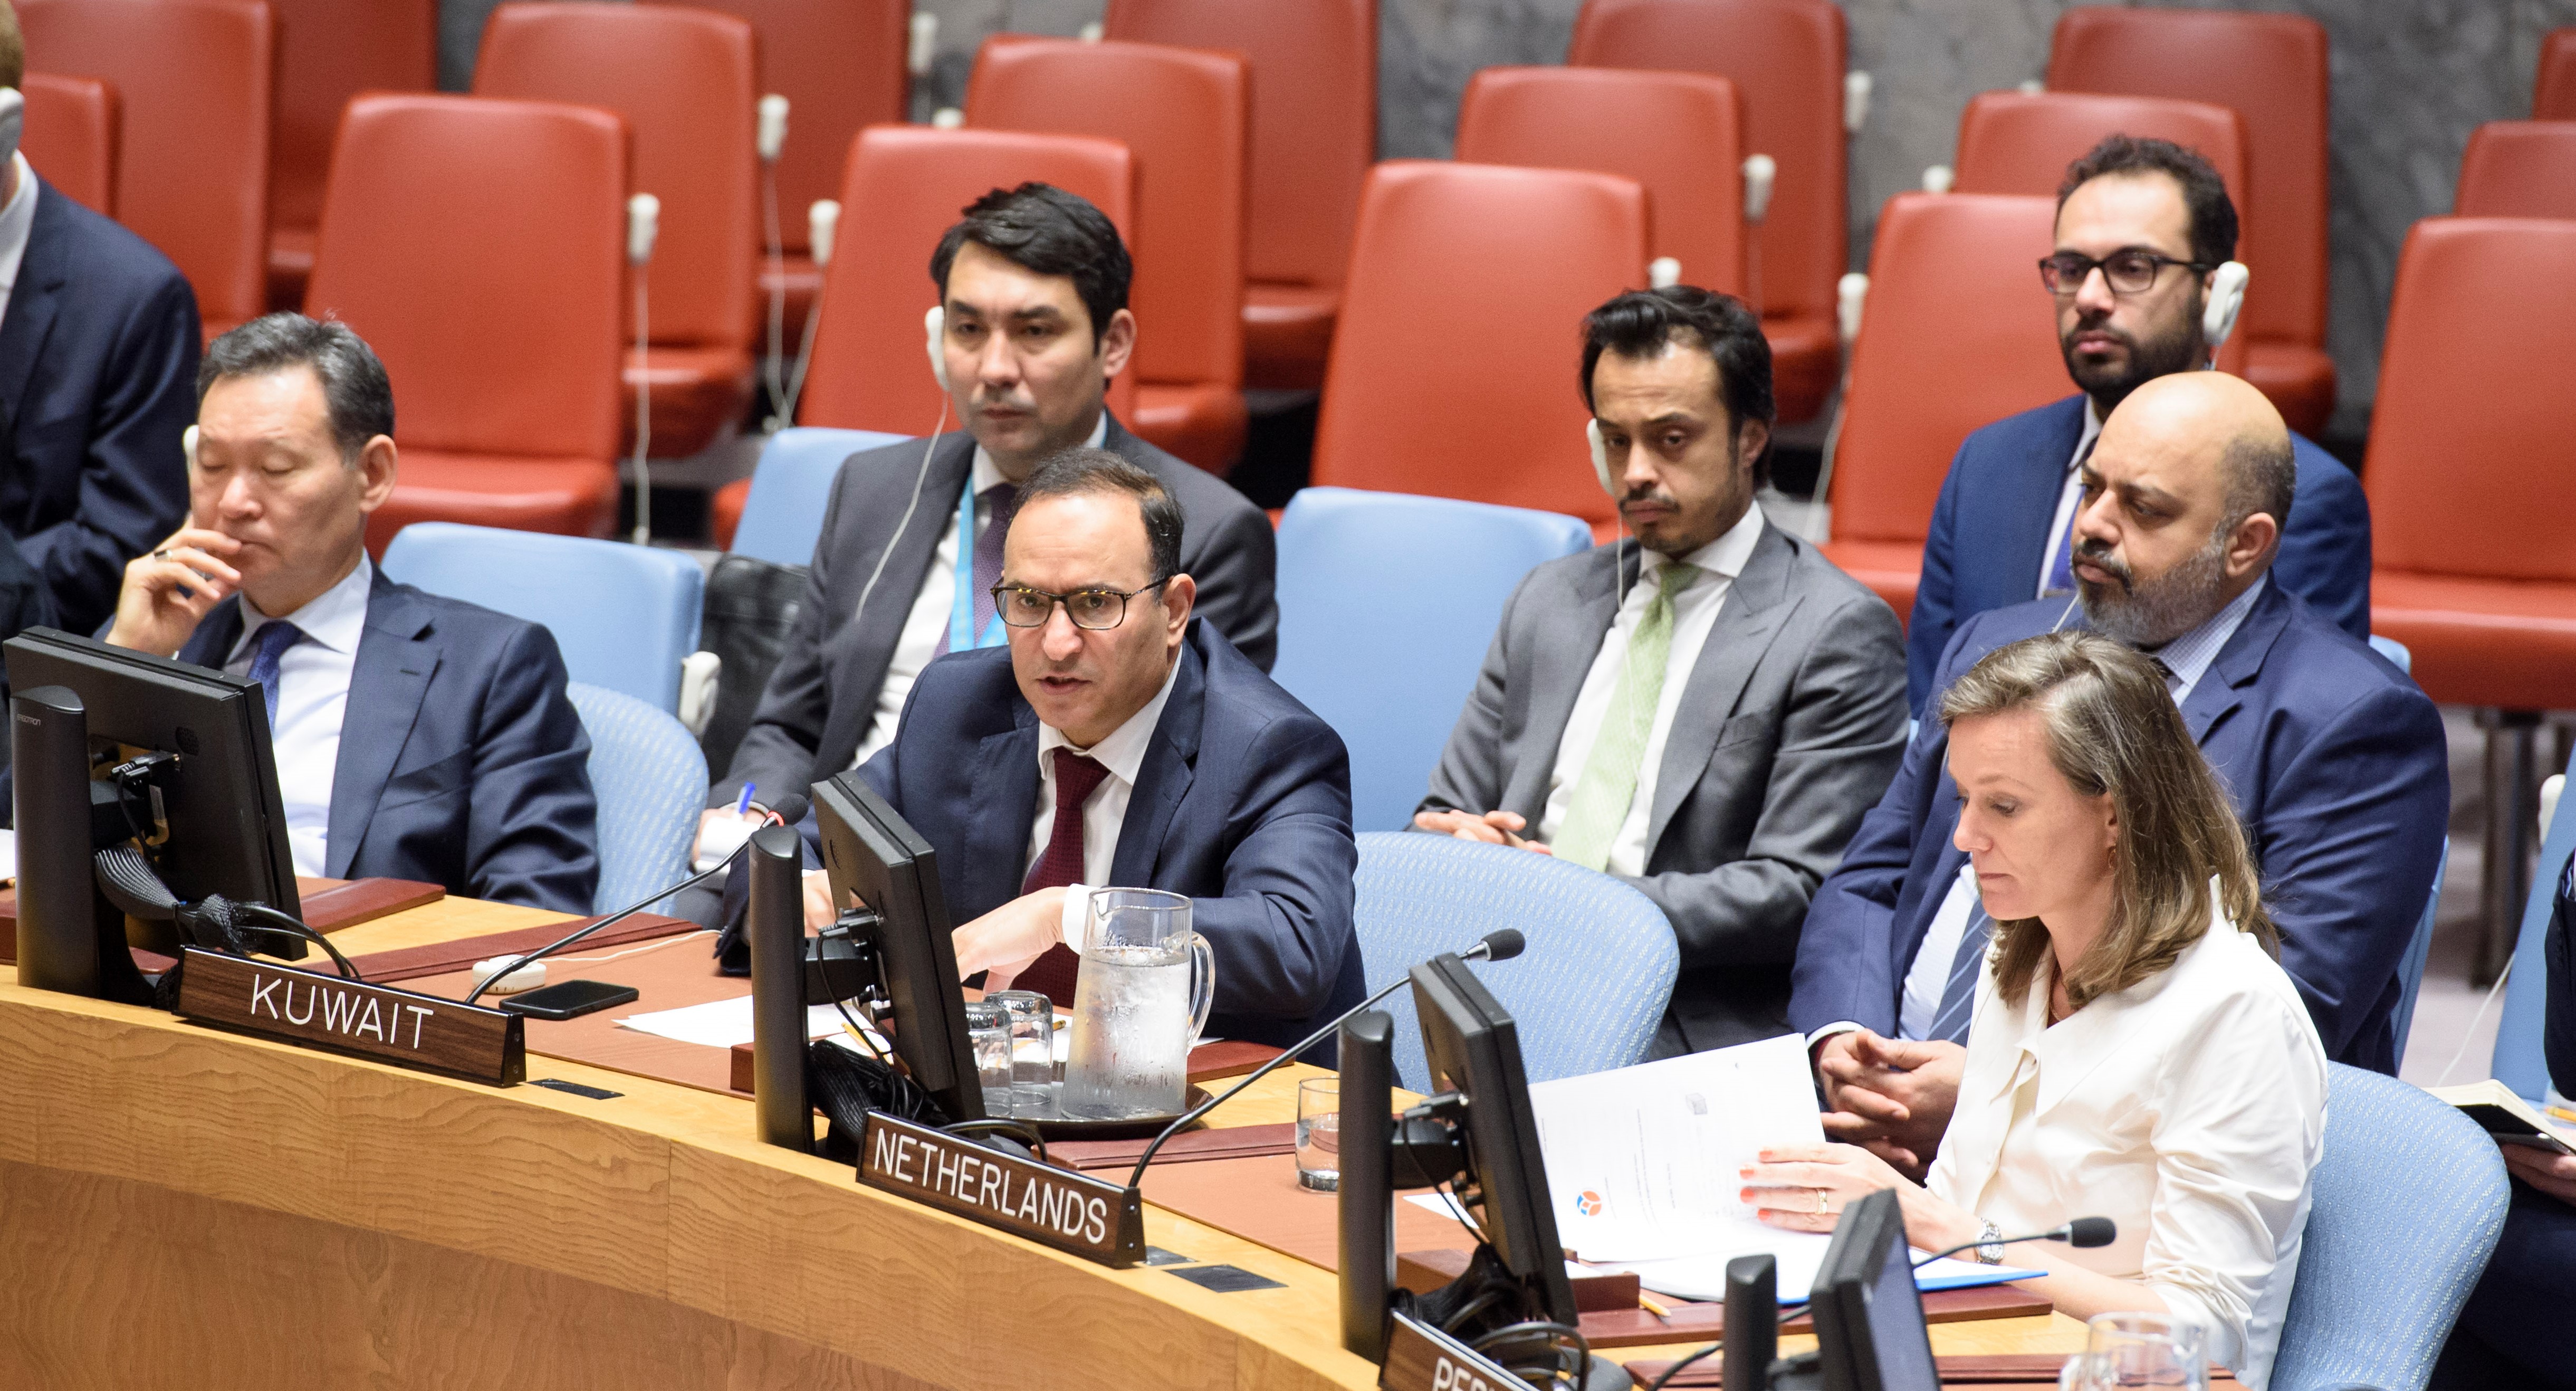 مندوب دولة الكويت الدائم لدى الأمم المتحدة السفير منصور العتيبي خلال الجلسة التي عقدها مجلس الأمن حول ليبيا